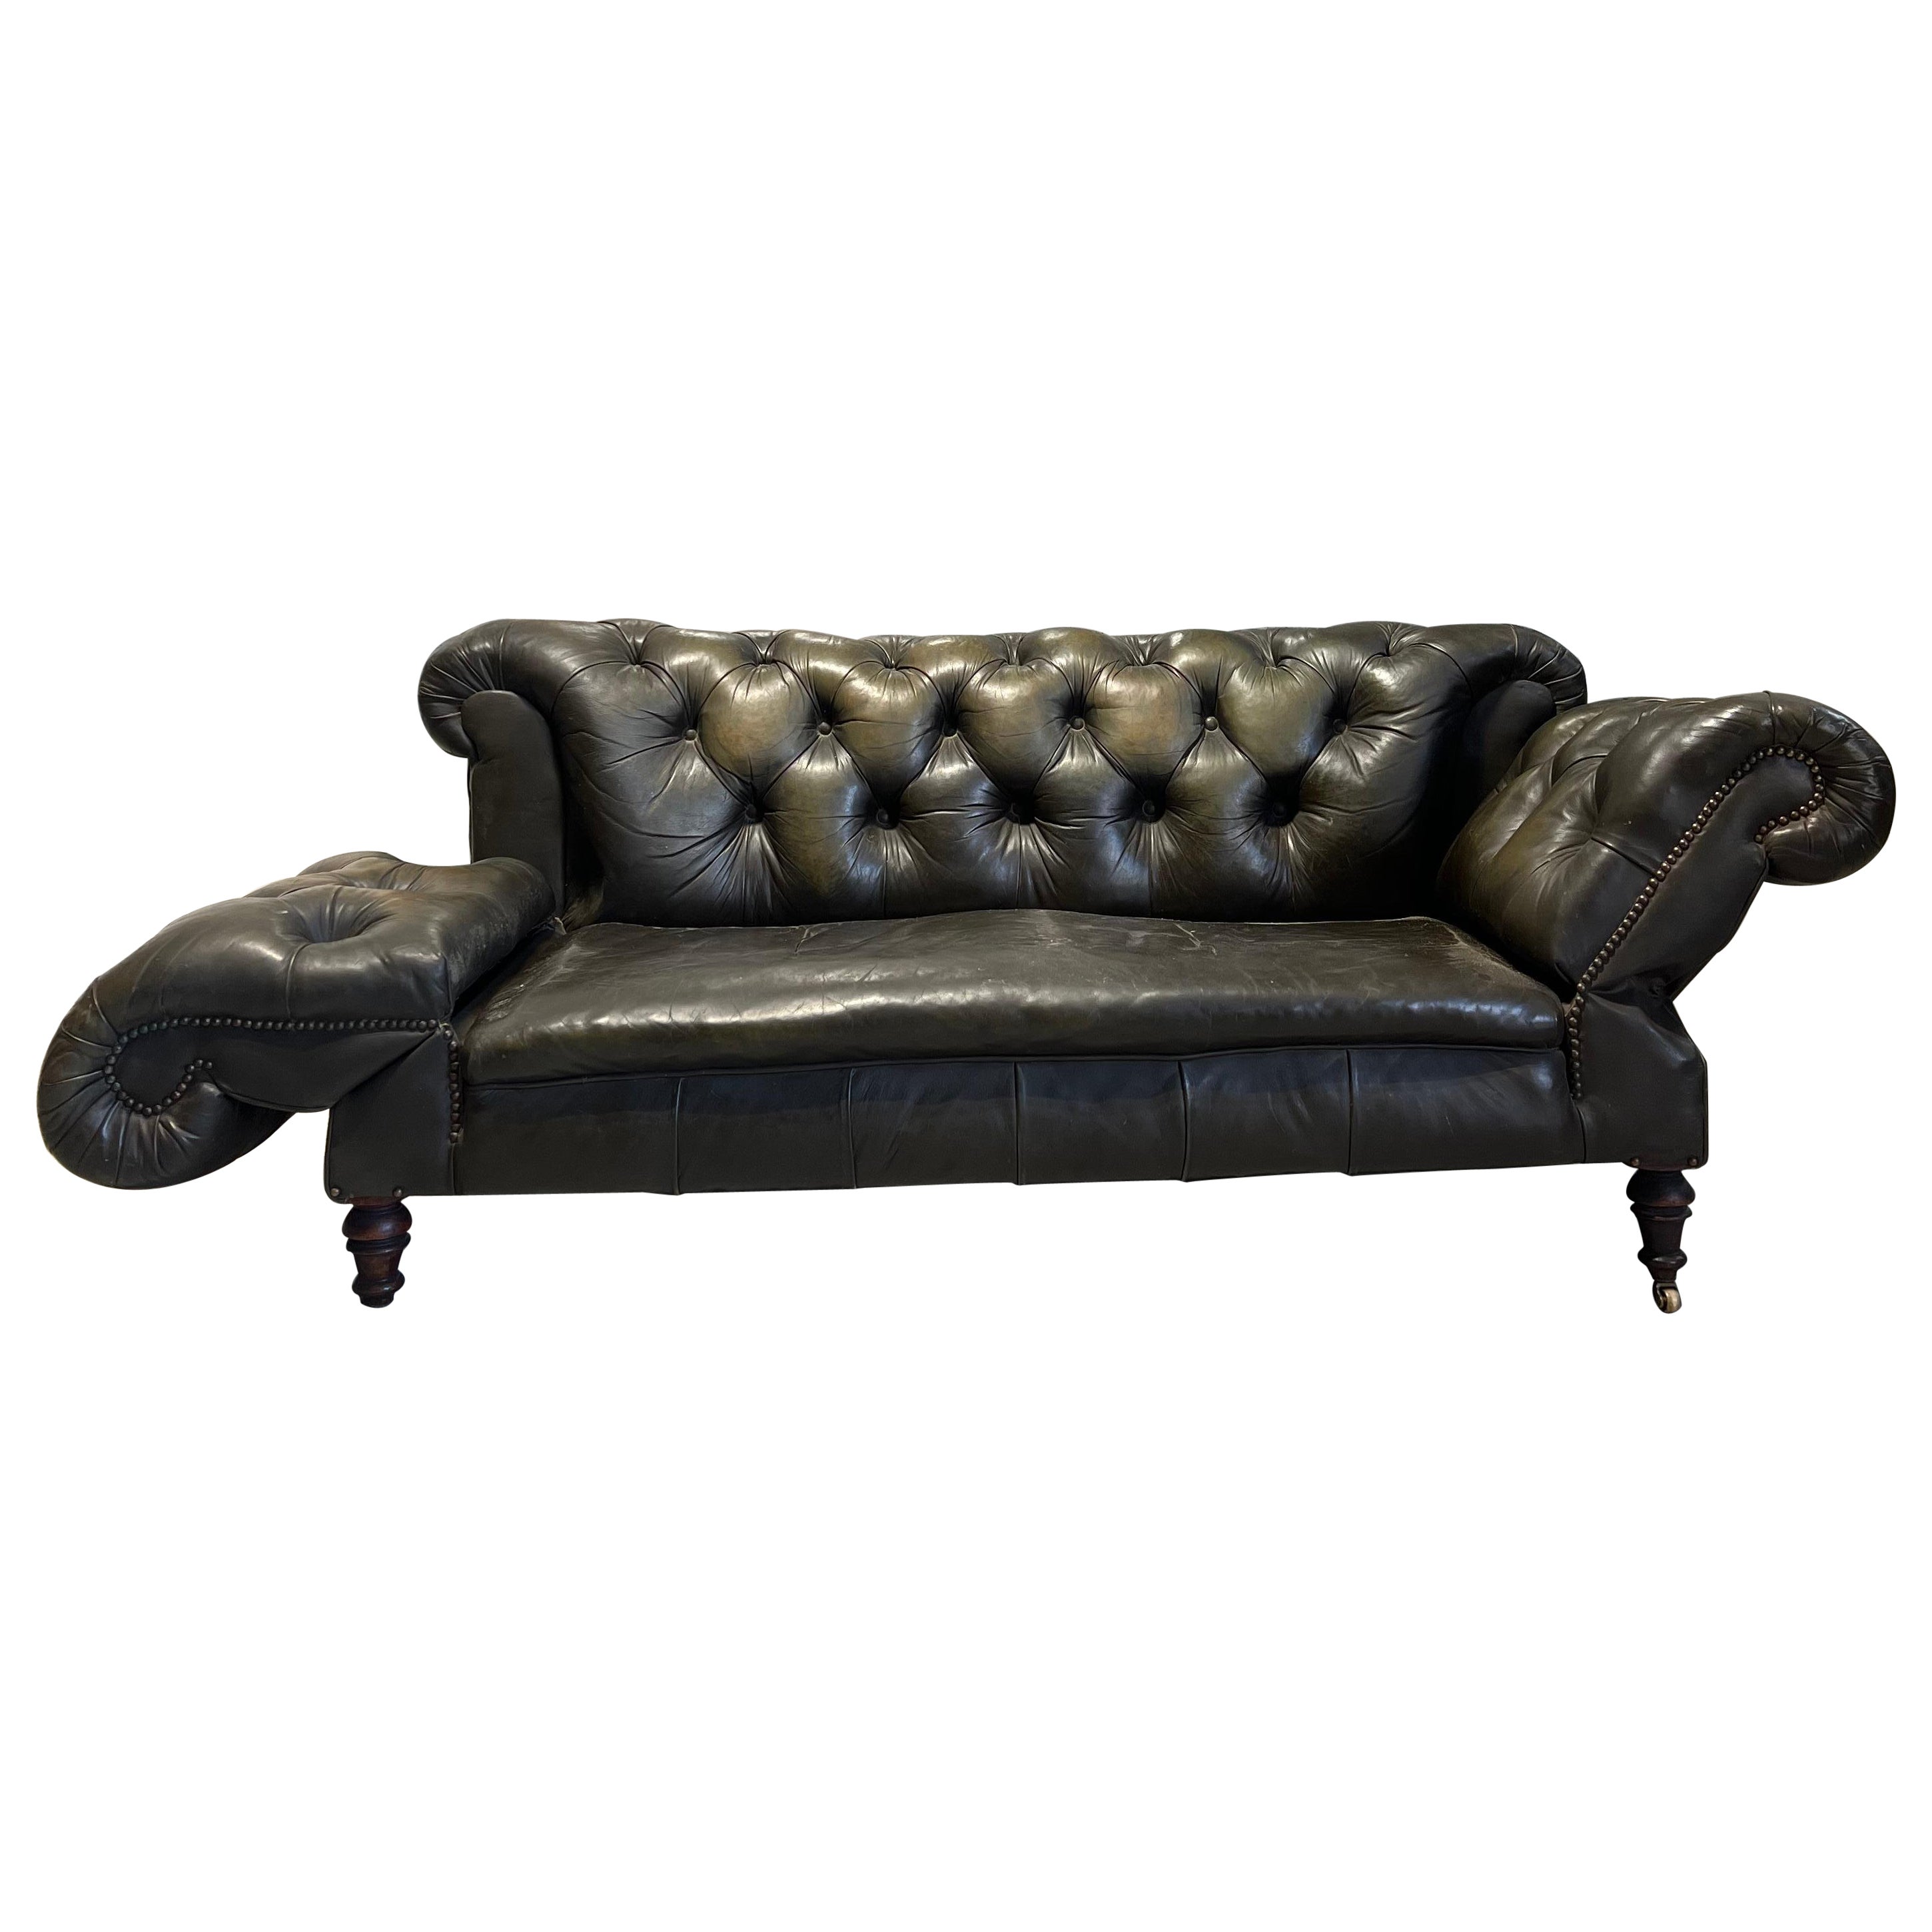 Antikes Chesterfield-Sofa aus dem 19. Jahrhundert aus schönem patiniertem Leder